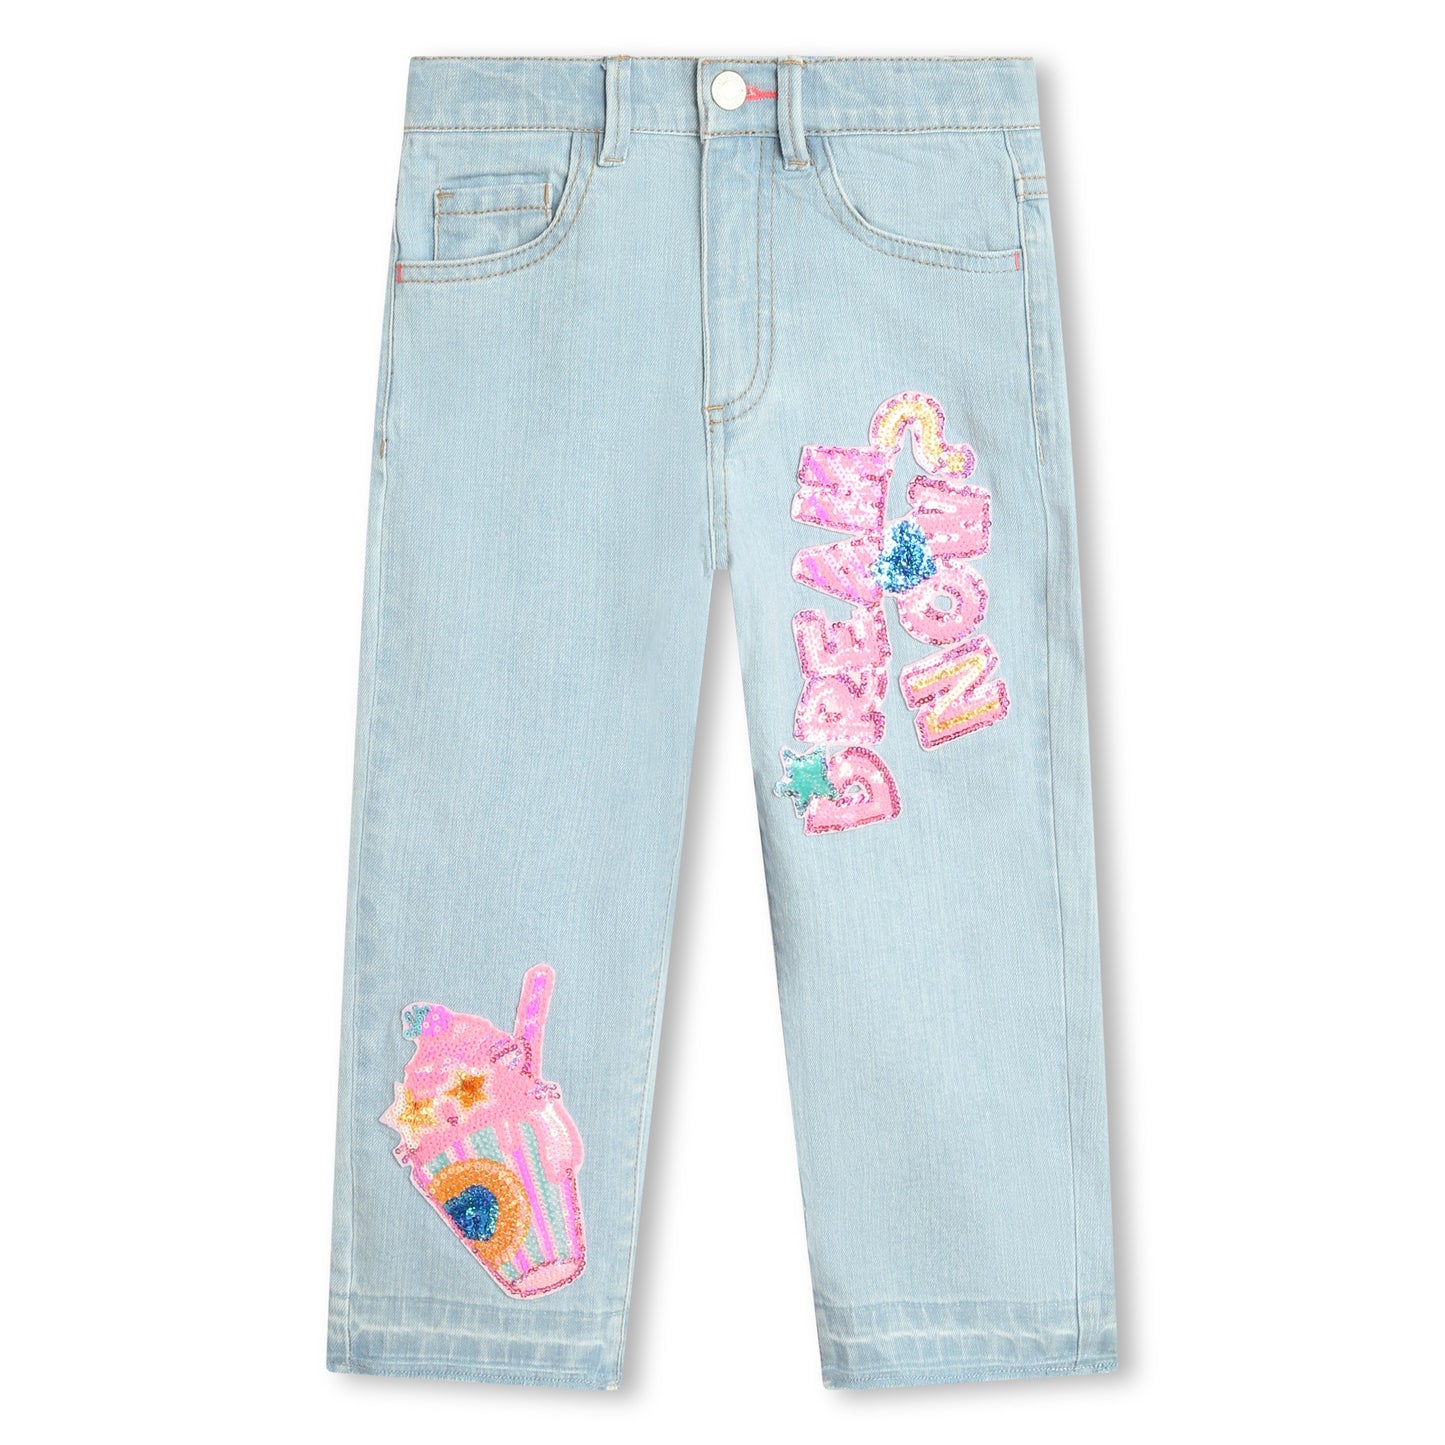 Billie Blush Girl's 5-Pocket Sequined Jeans